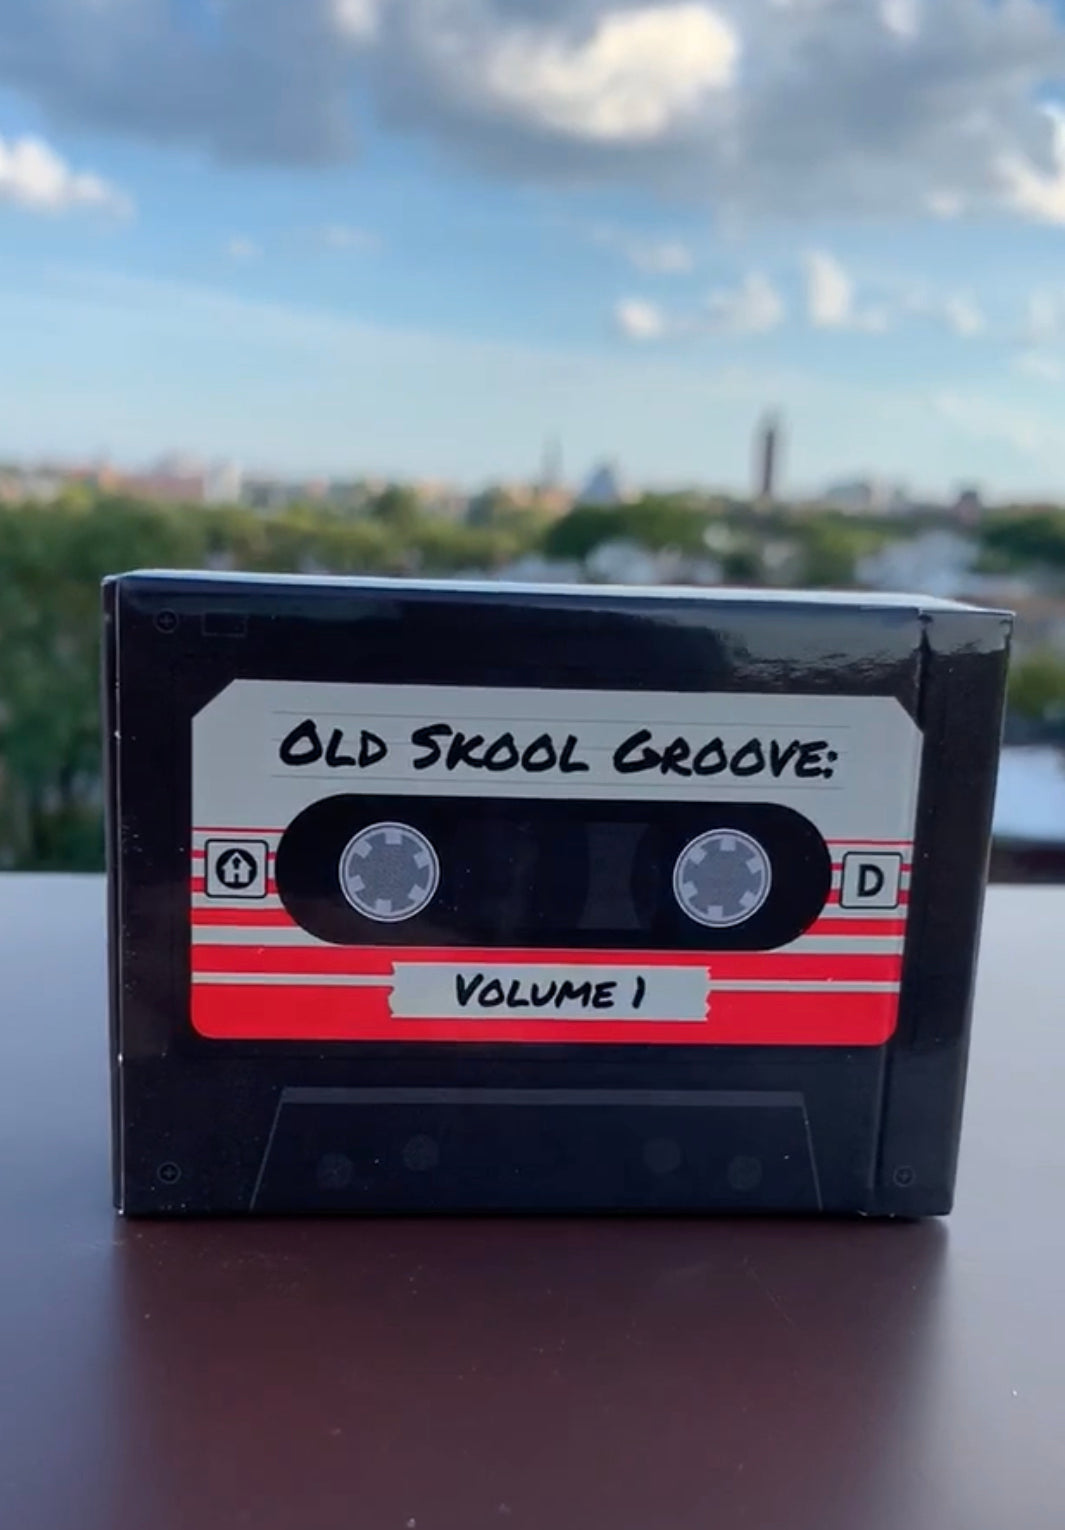 Old Skool Groove: Vol 1